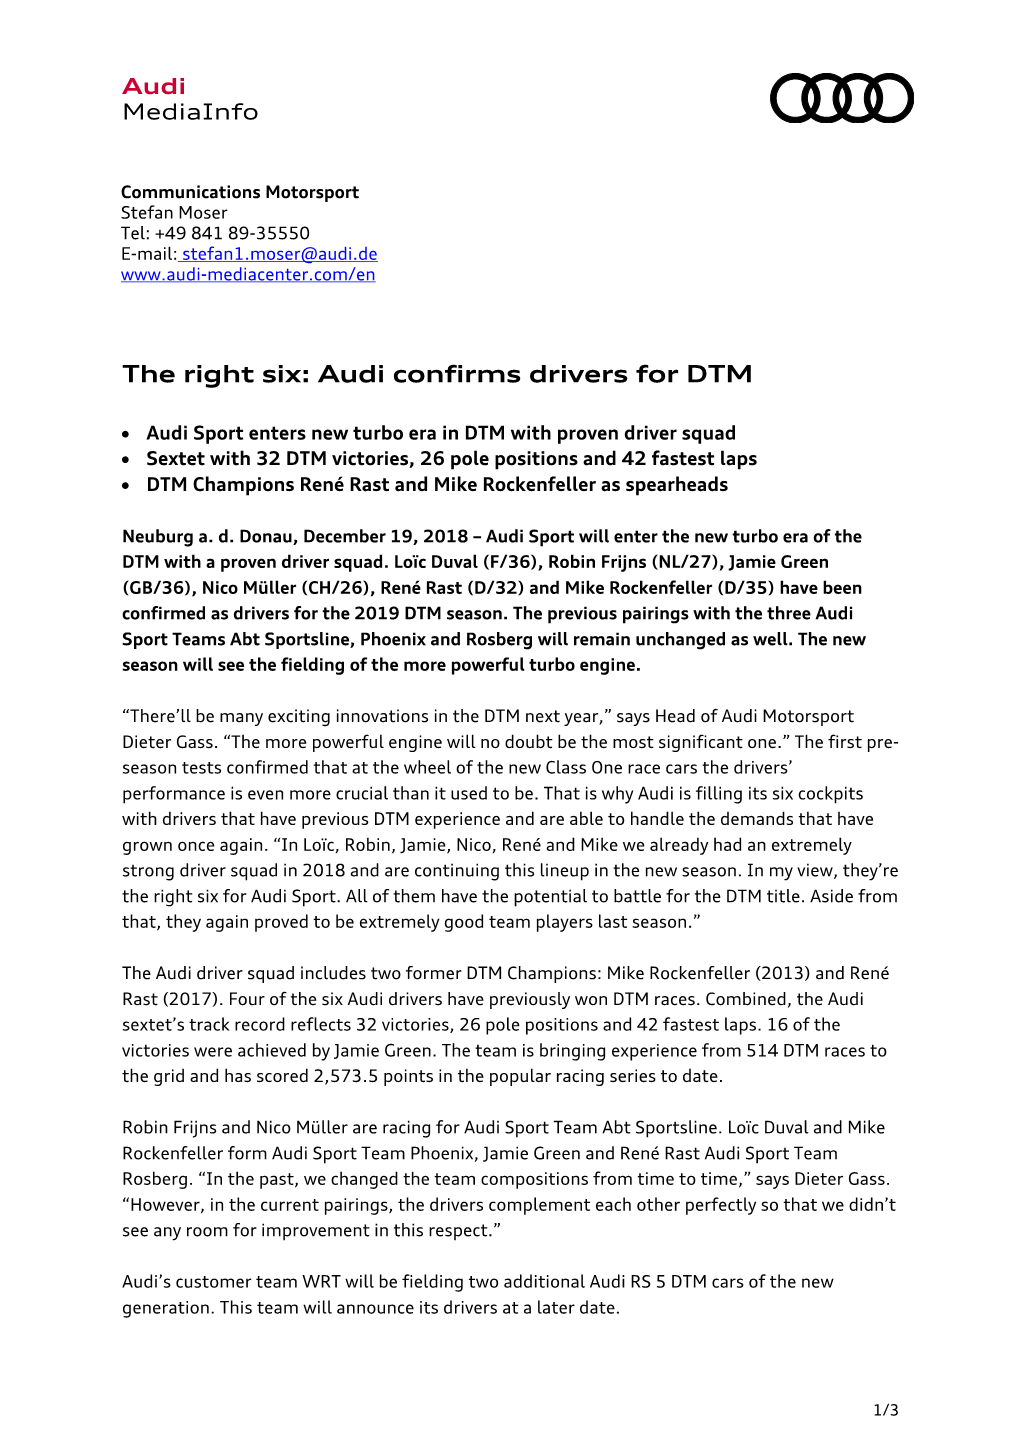 Audi Confirms Drivers for DTM